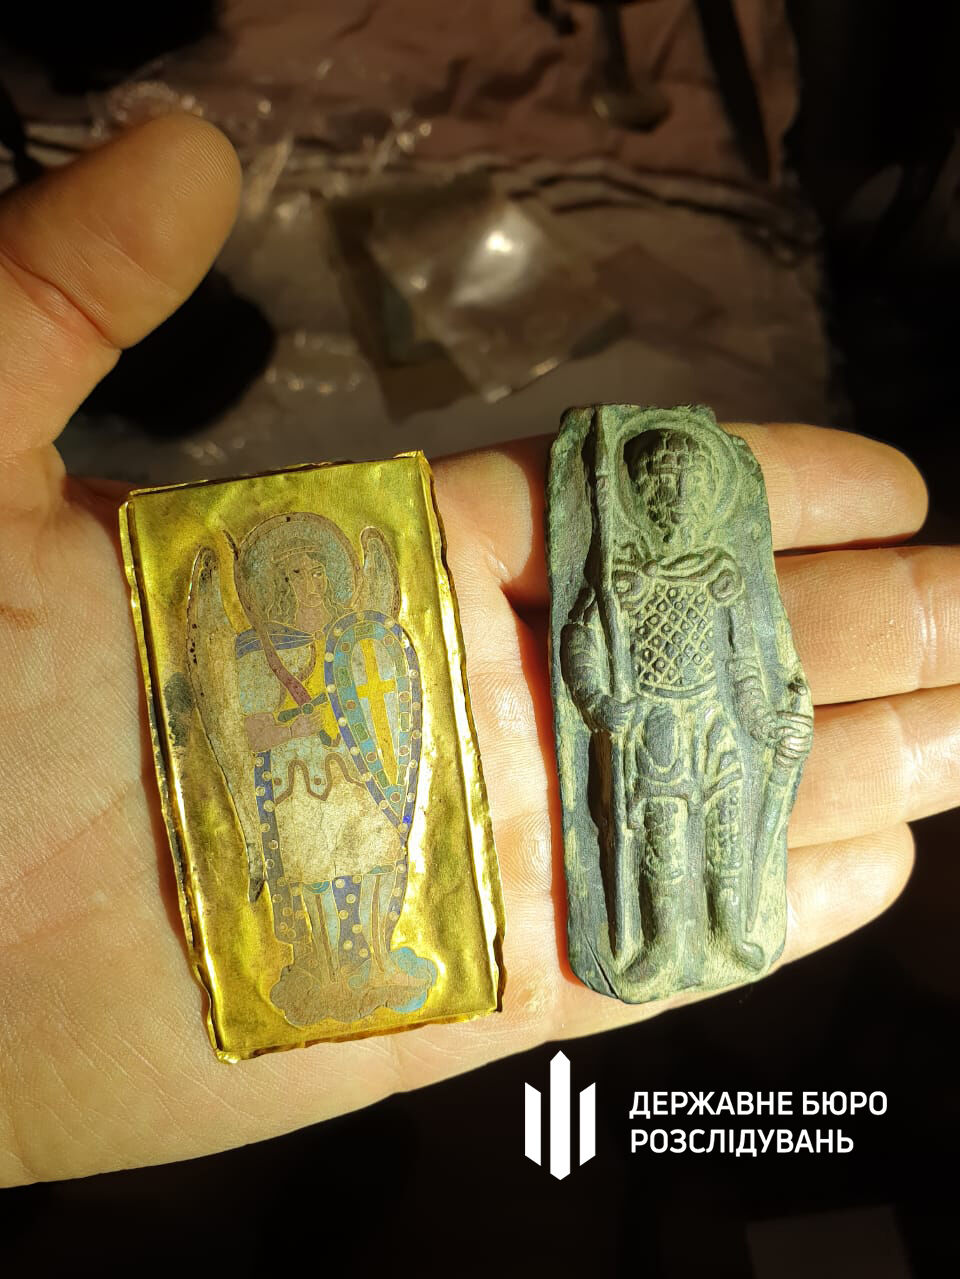 У екснардепа Горбатова знайшли ще одну колекцію стародавніх українських артефактів. Фото 12